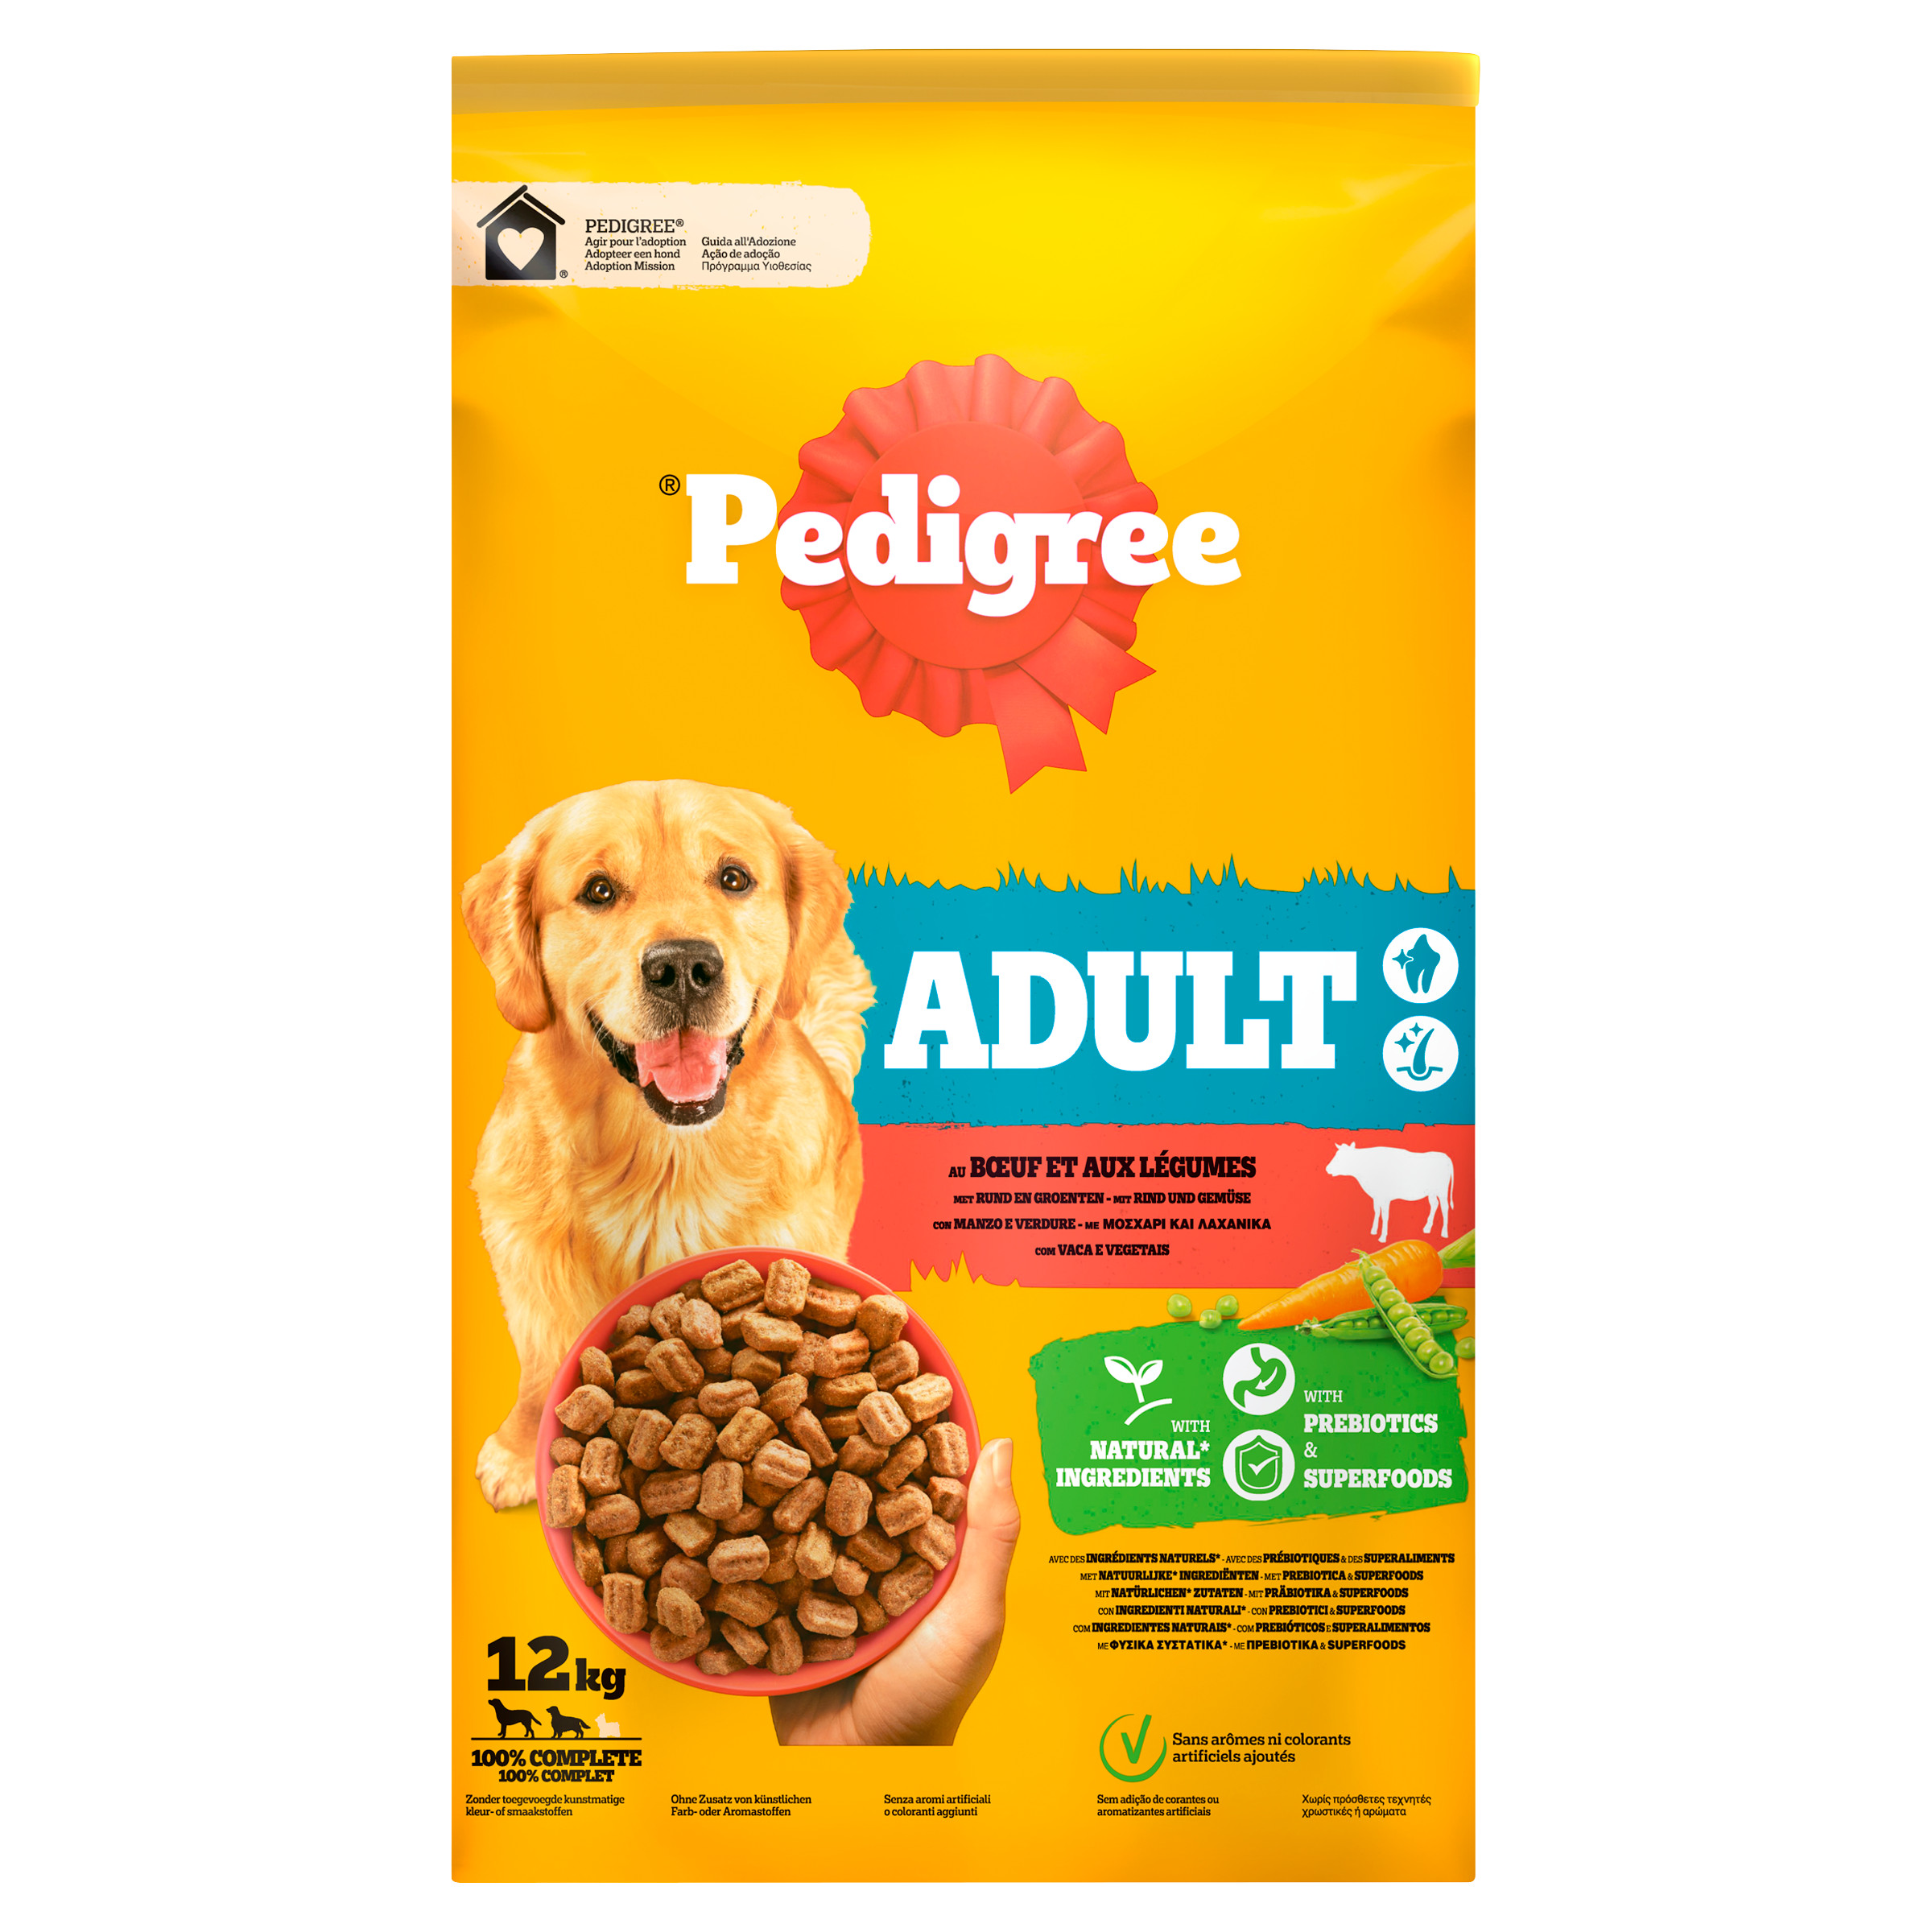 Pedigree Adult met rund & groenten hondenvoer